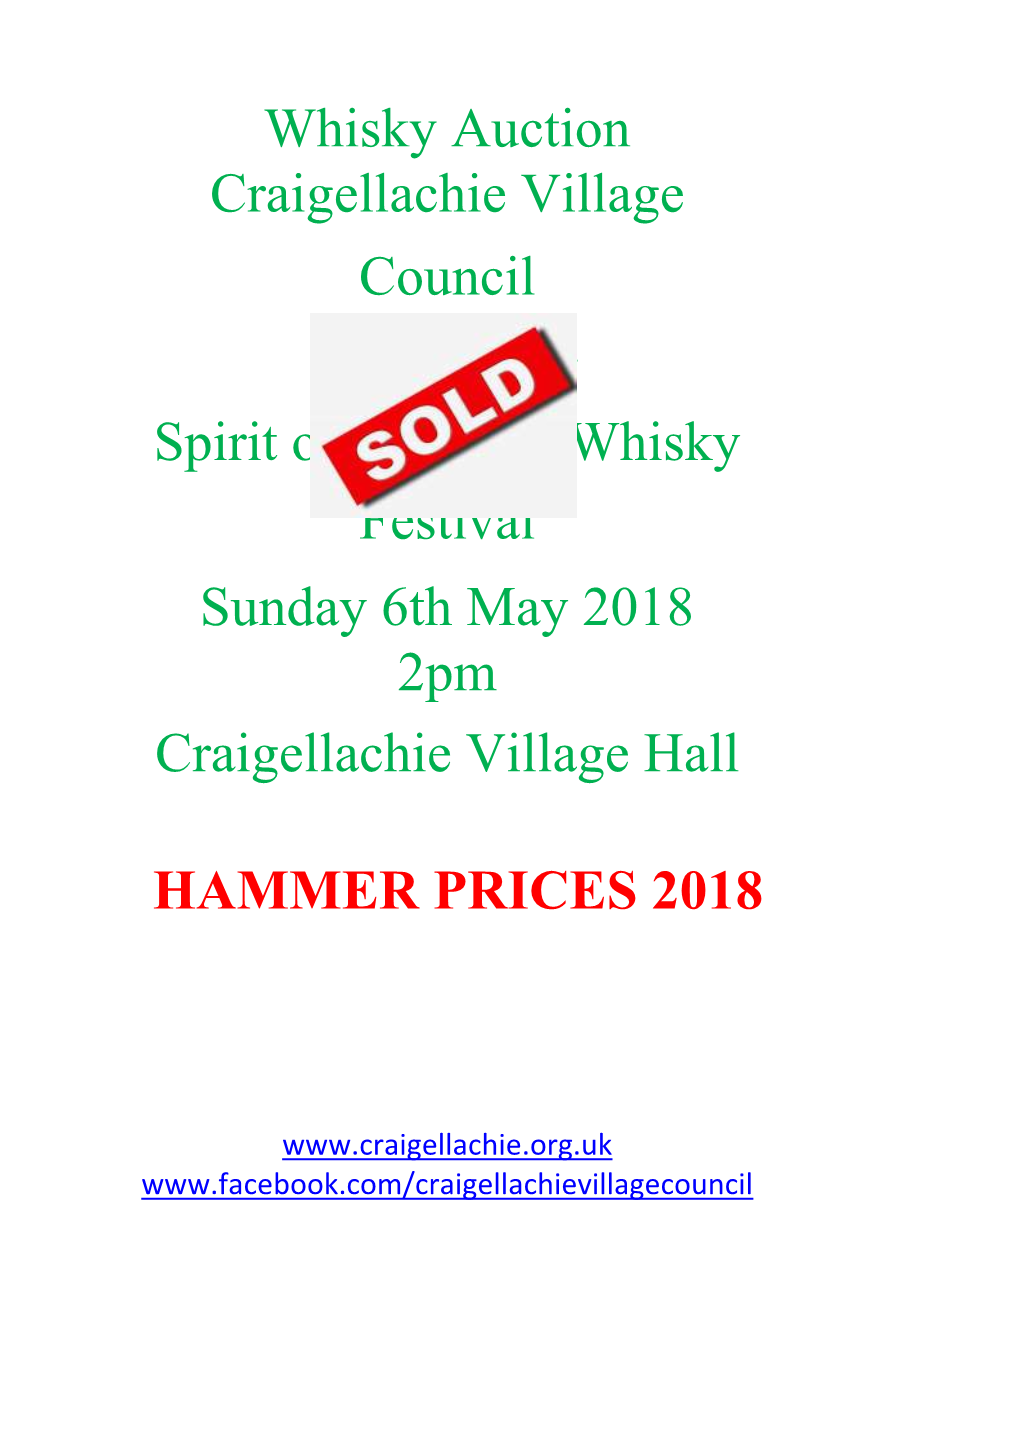 HAMMER PRICES 2018 Whisky Auction Craigellachie Village